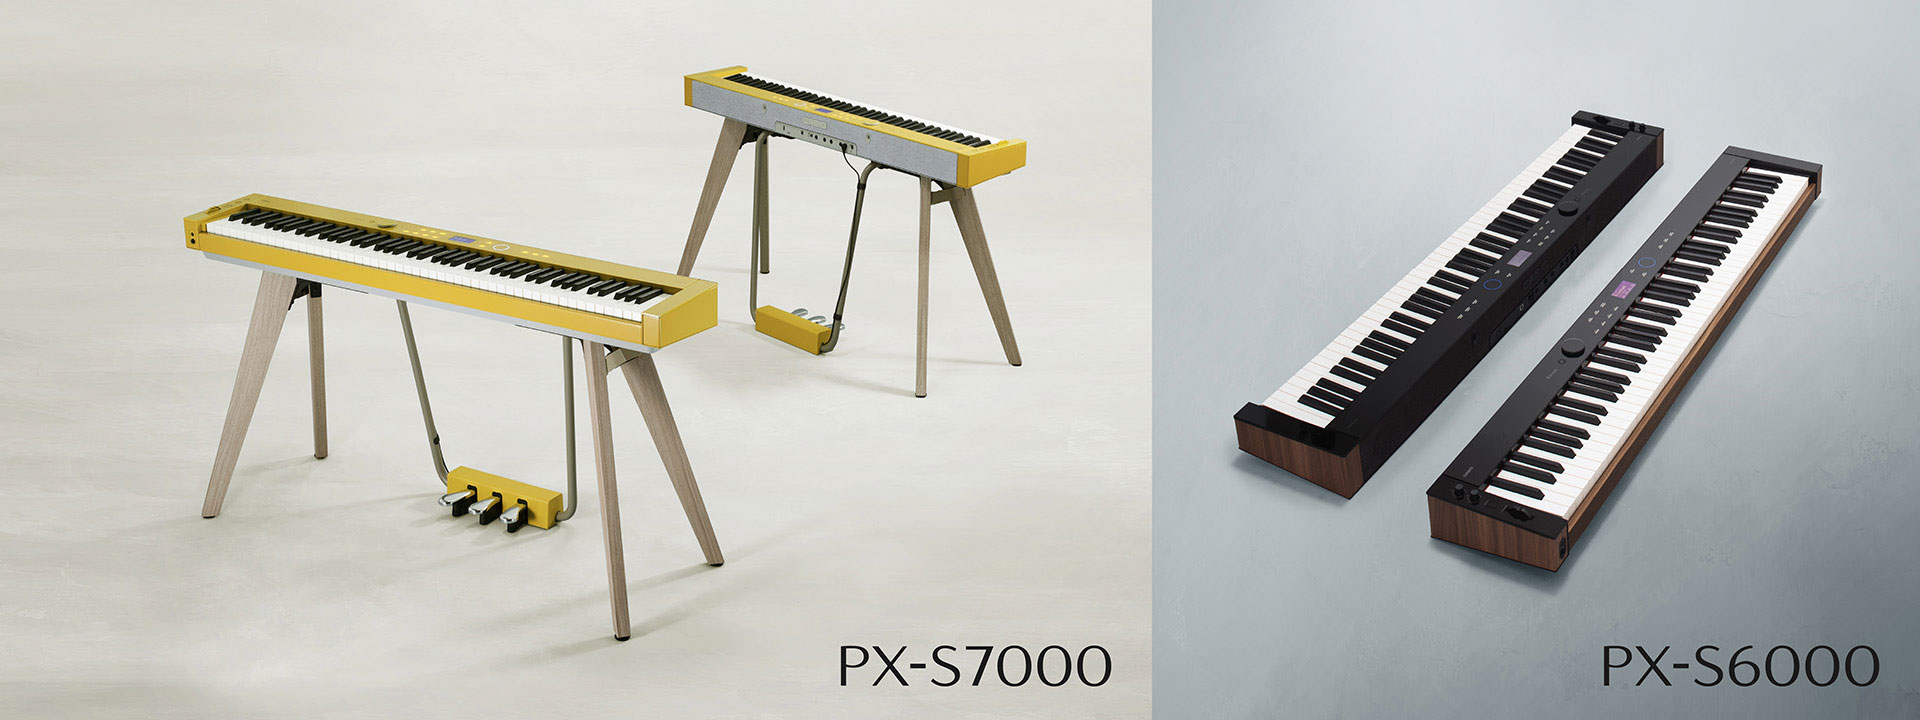 カシオよりPXシリーズの最上位機種が新たにリリース！モダンで美しい全周デザインと革新的なサウンドテクノロジーが融合。日常の様々なシーンに自然と調和し、今までの　ピアノが持つイメージを一新させ、理想のライフスタイルをデザインするピアノです。 CONTENTSPX-S7000PX-S6000PX-S70 […]